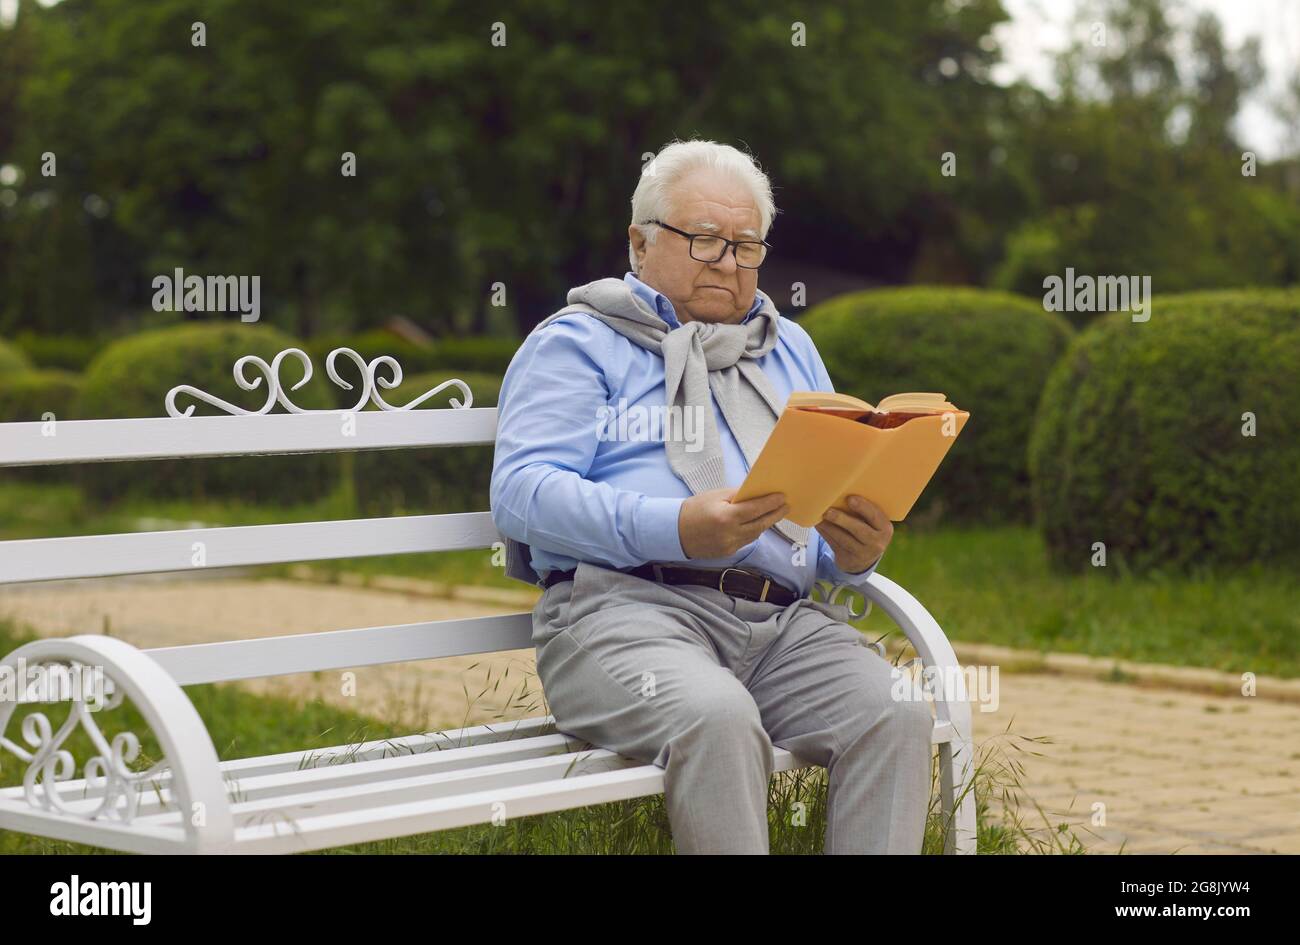 Un homme âgé de niveau supérieur à lunettes aime lire un livre assis sur un banc dans le parc Banque D'Images